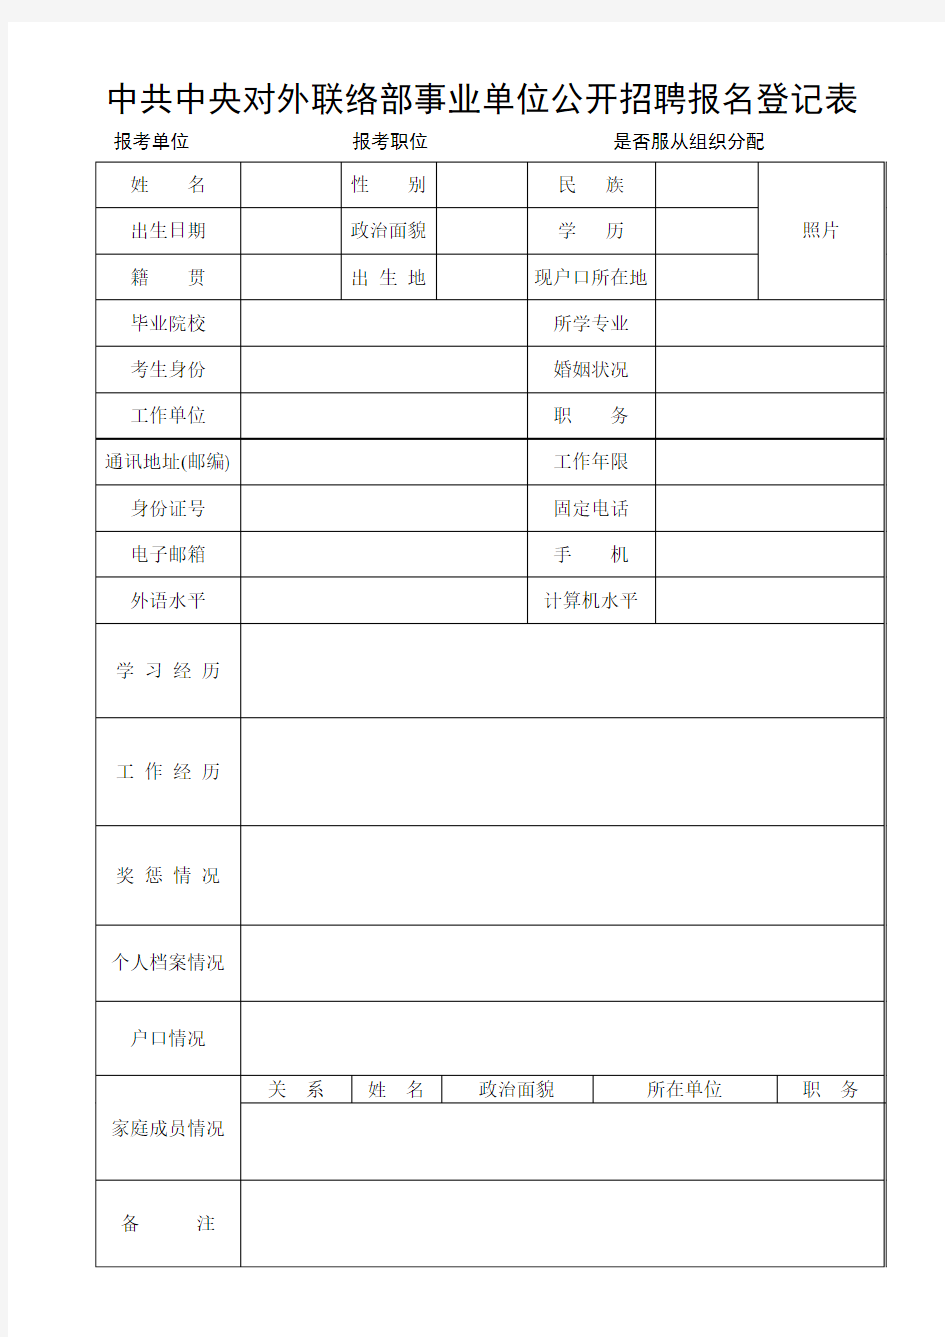 中共中央对外联络部事业单位公开招聘报名登记表